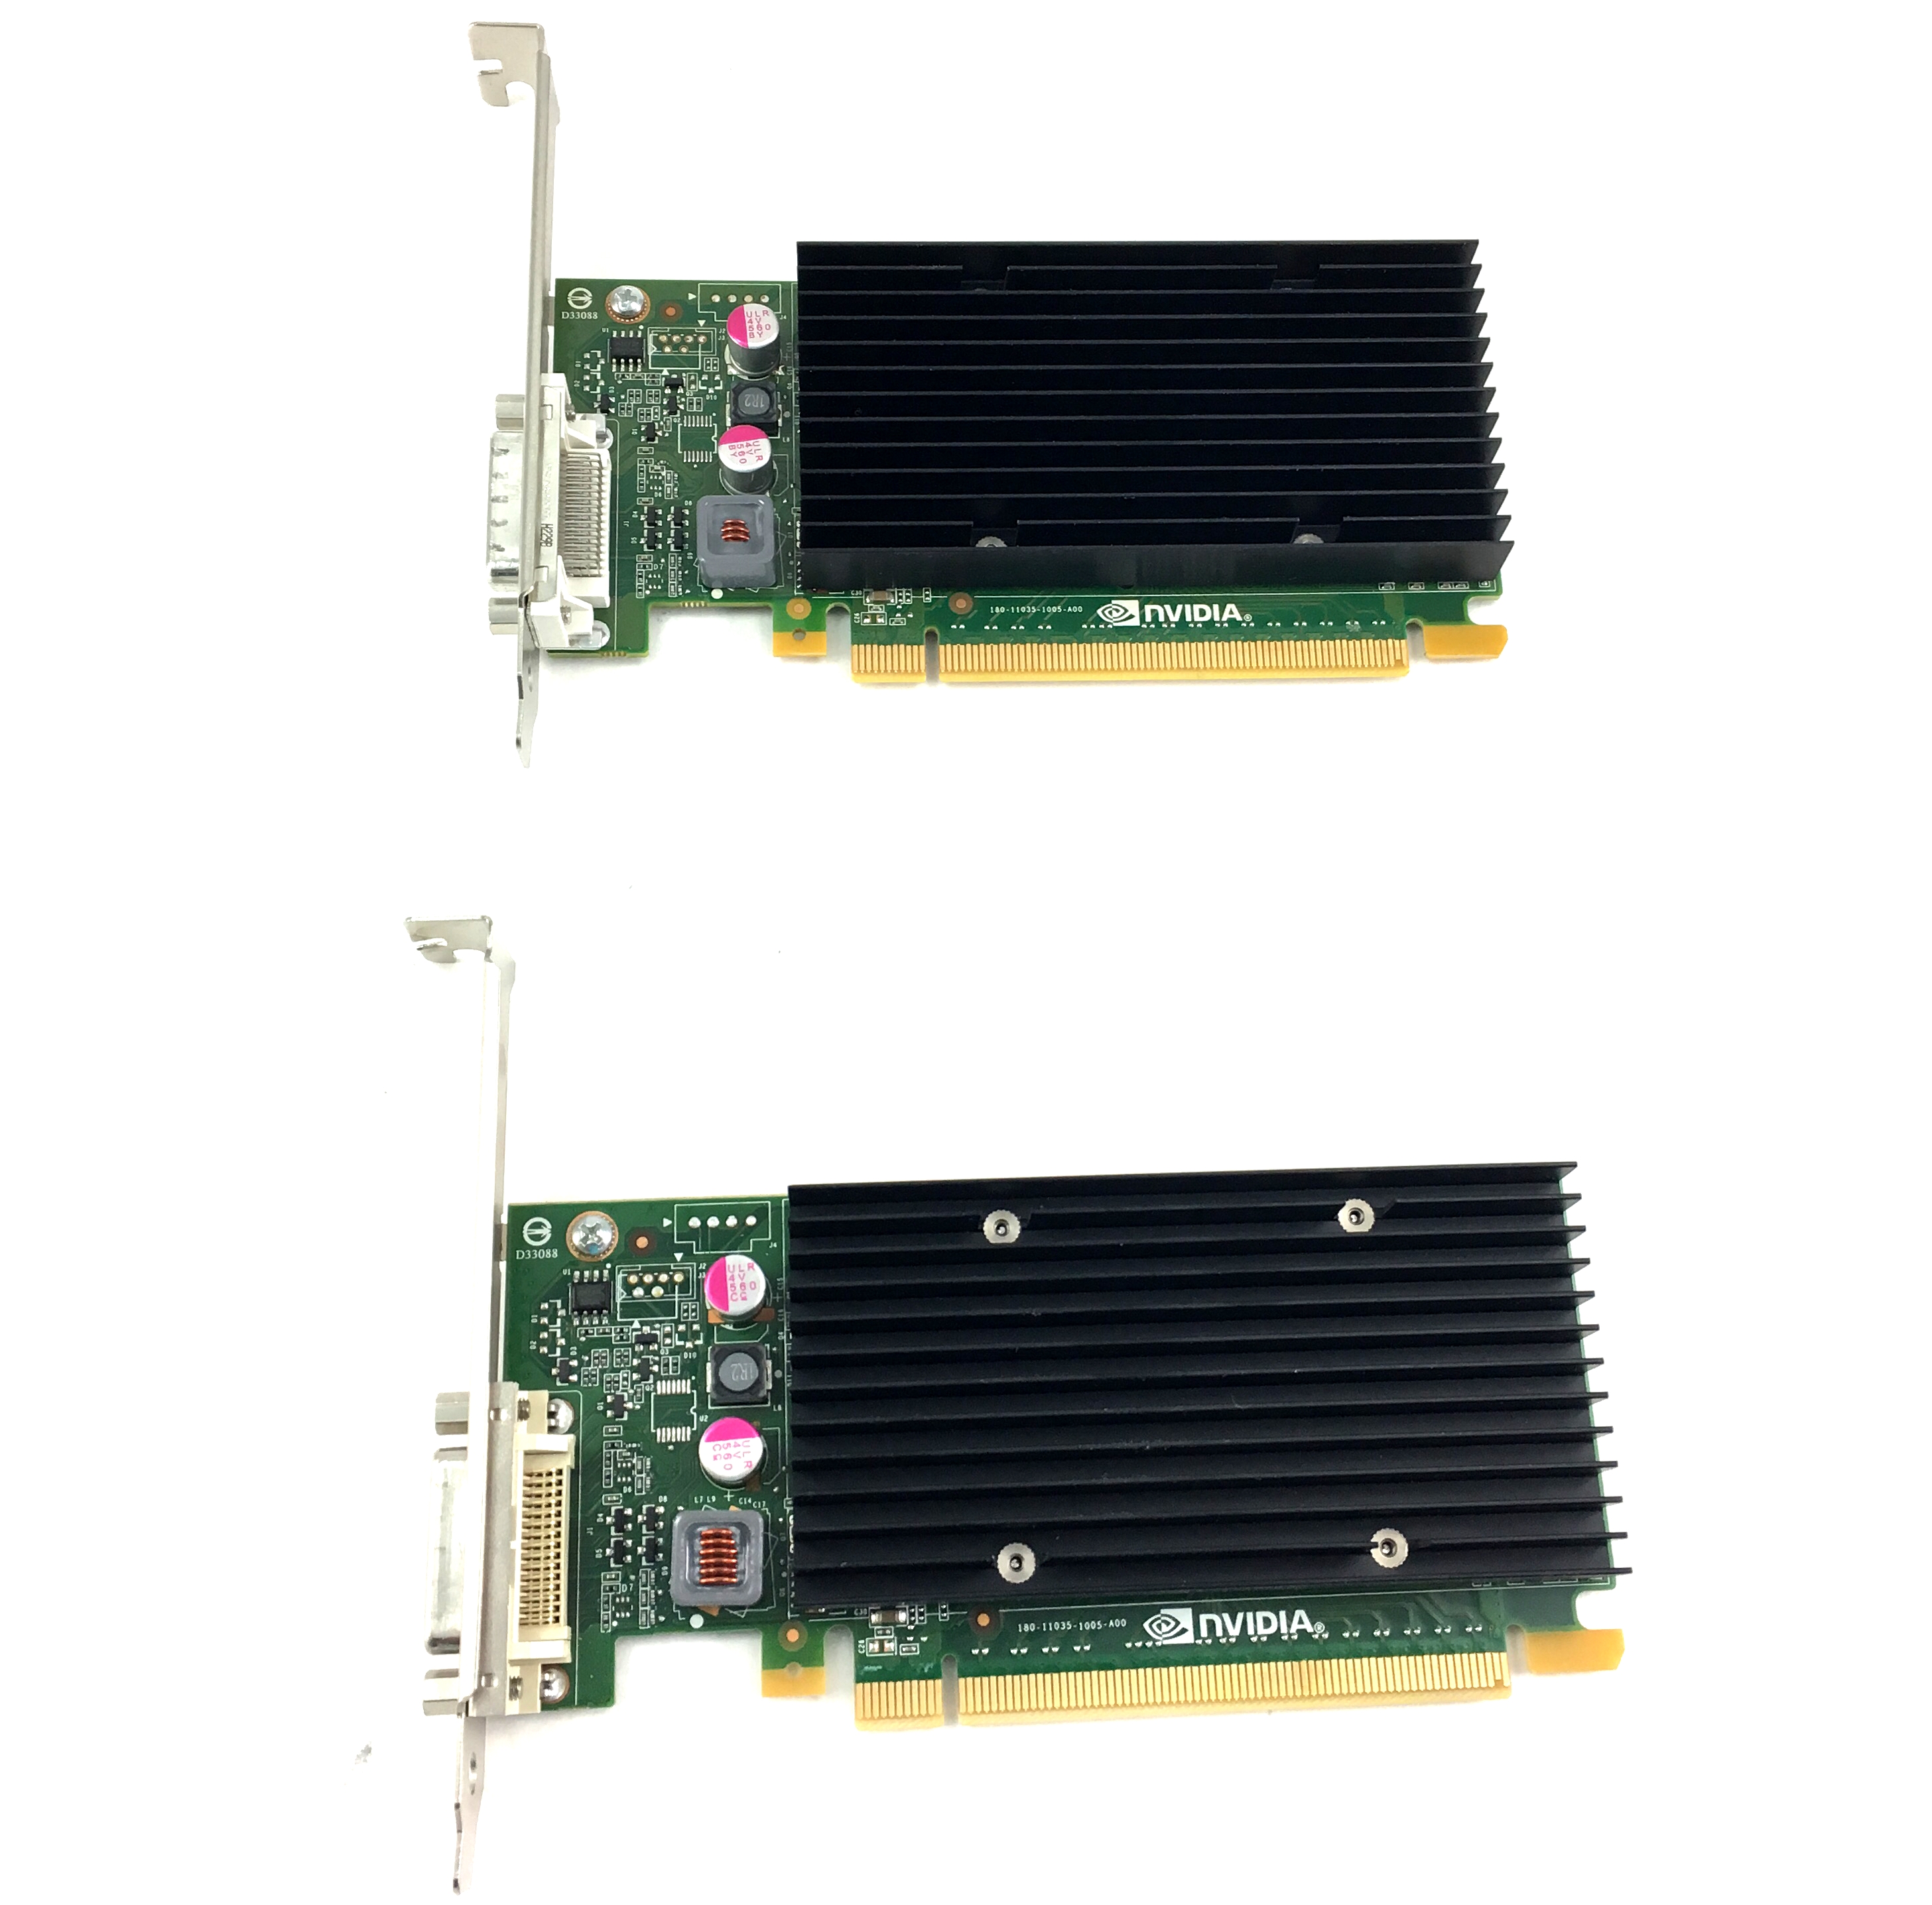 NVIDIA QUADRO NVS 300 512MB DDR3 PCI-E X16 GRAPHICS CARD (700578-001)